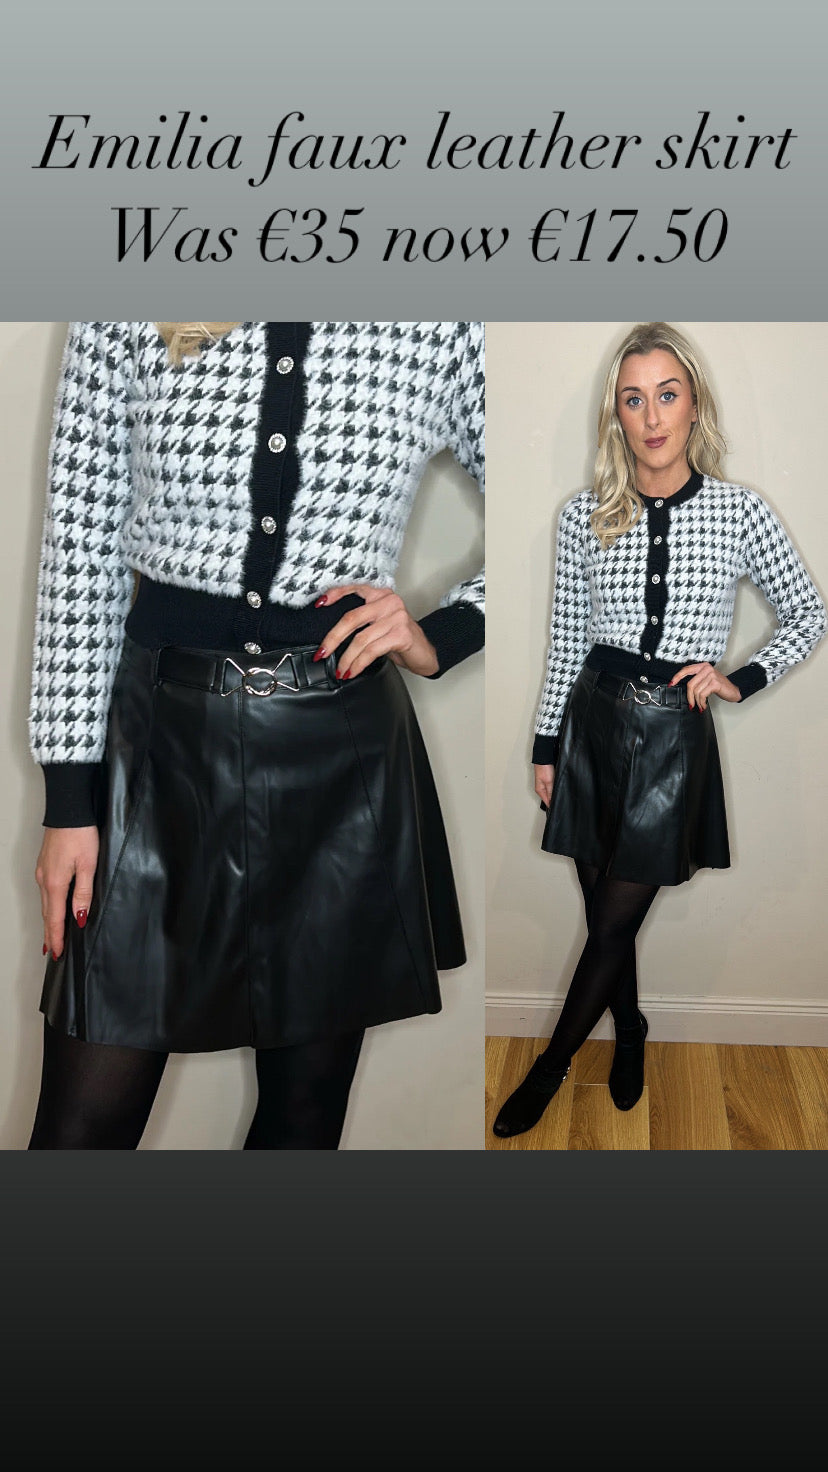 Emilia faux leather skirt